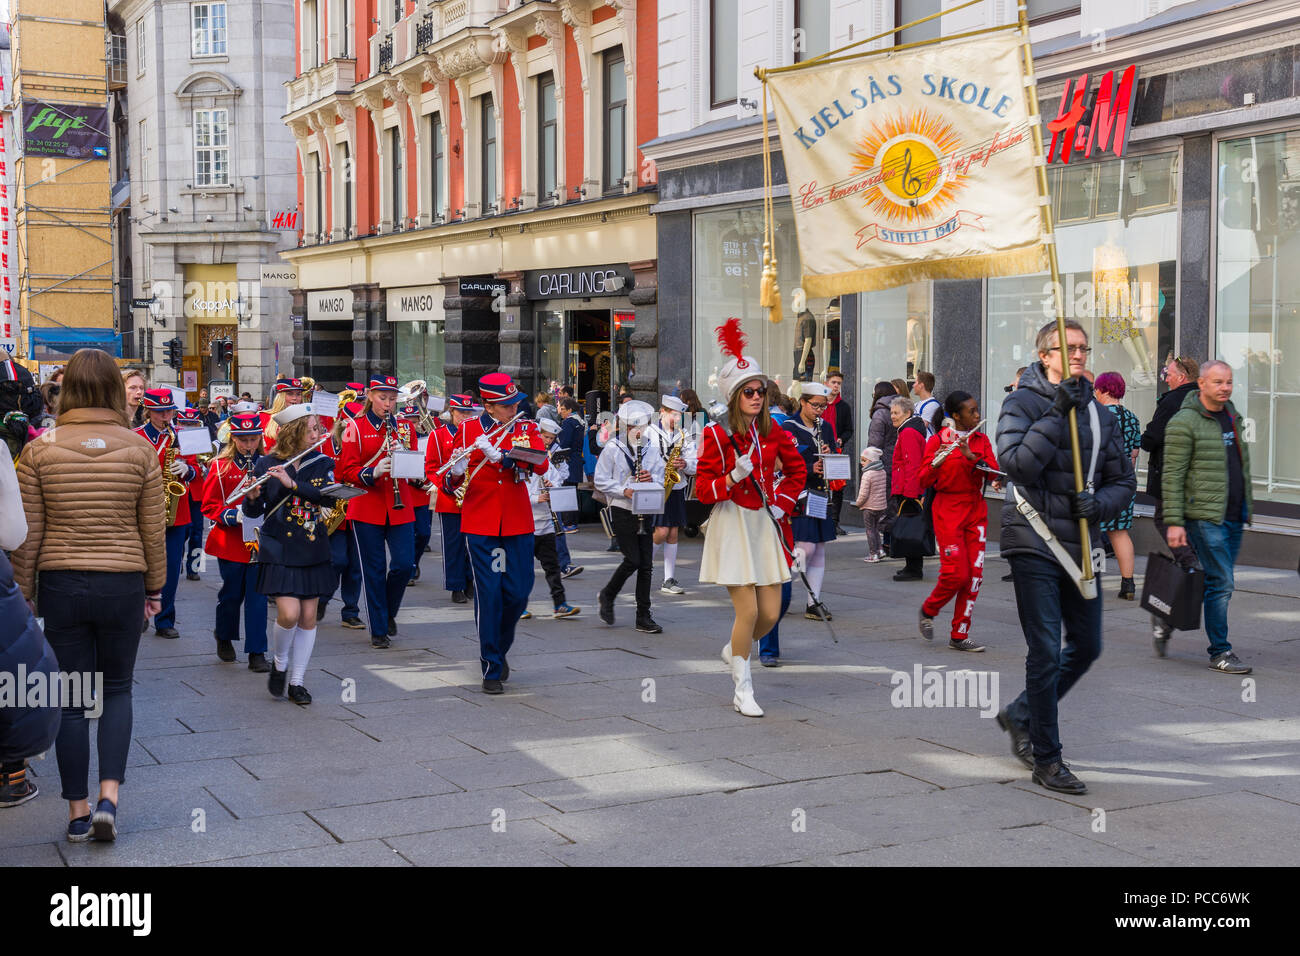 OSLO, Norvegia 28 APRILE 2018: Bande musicali sfilano per le strade di Oslo, Norvegia Foto Stock